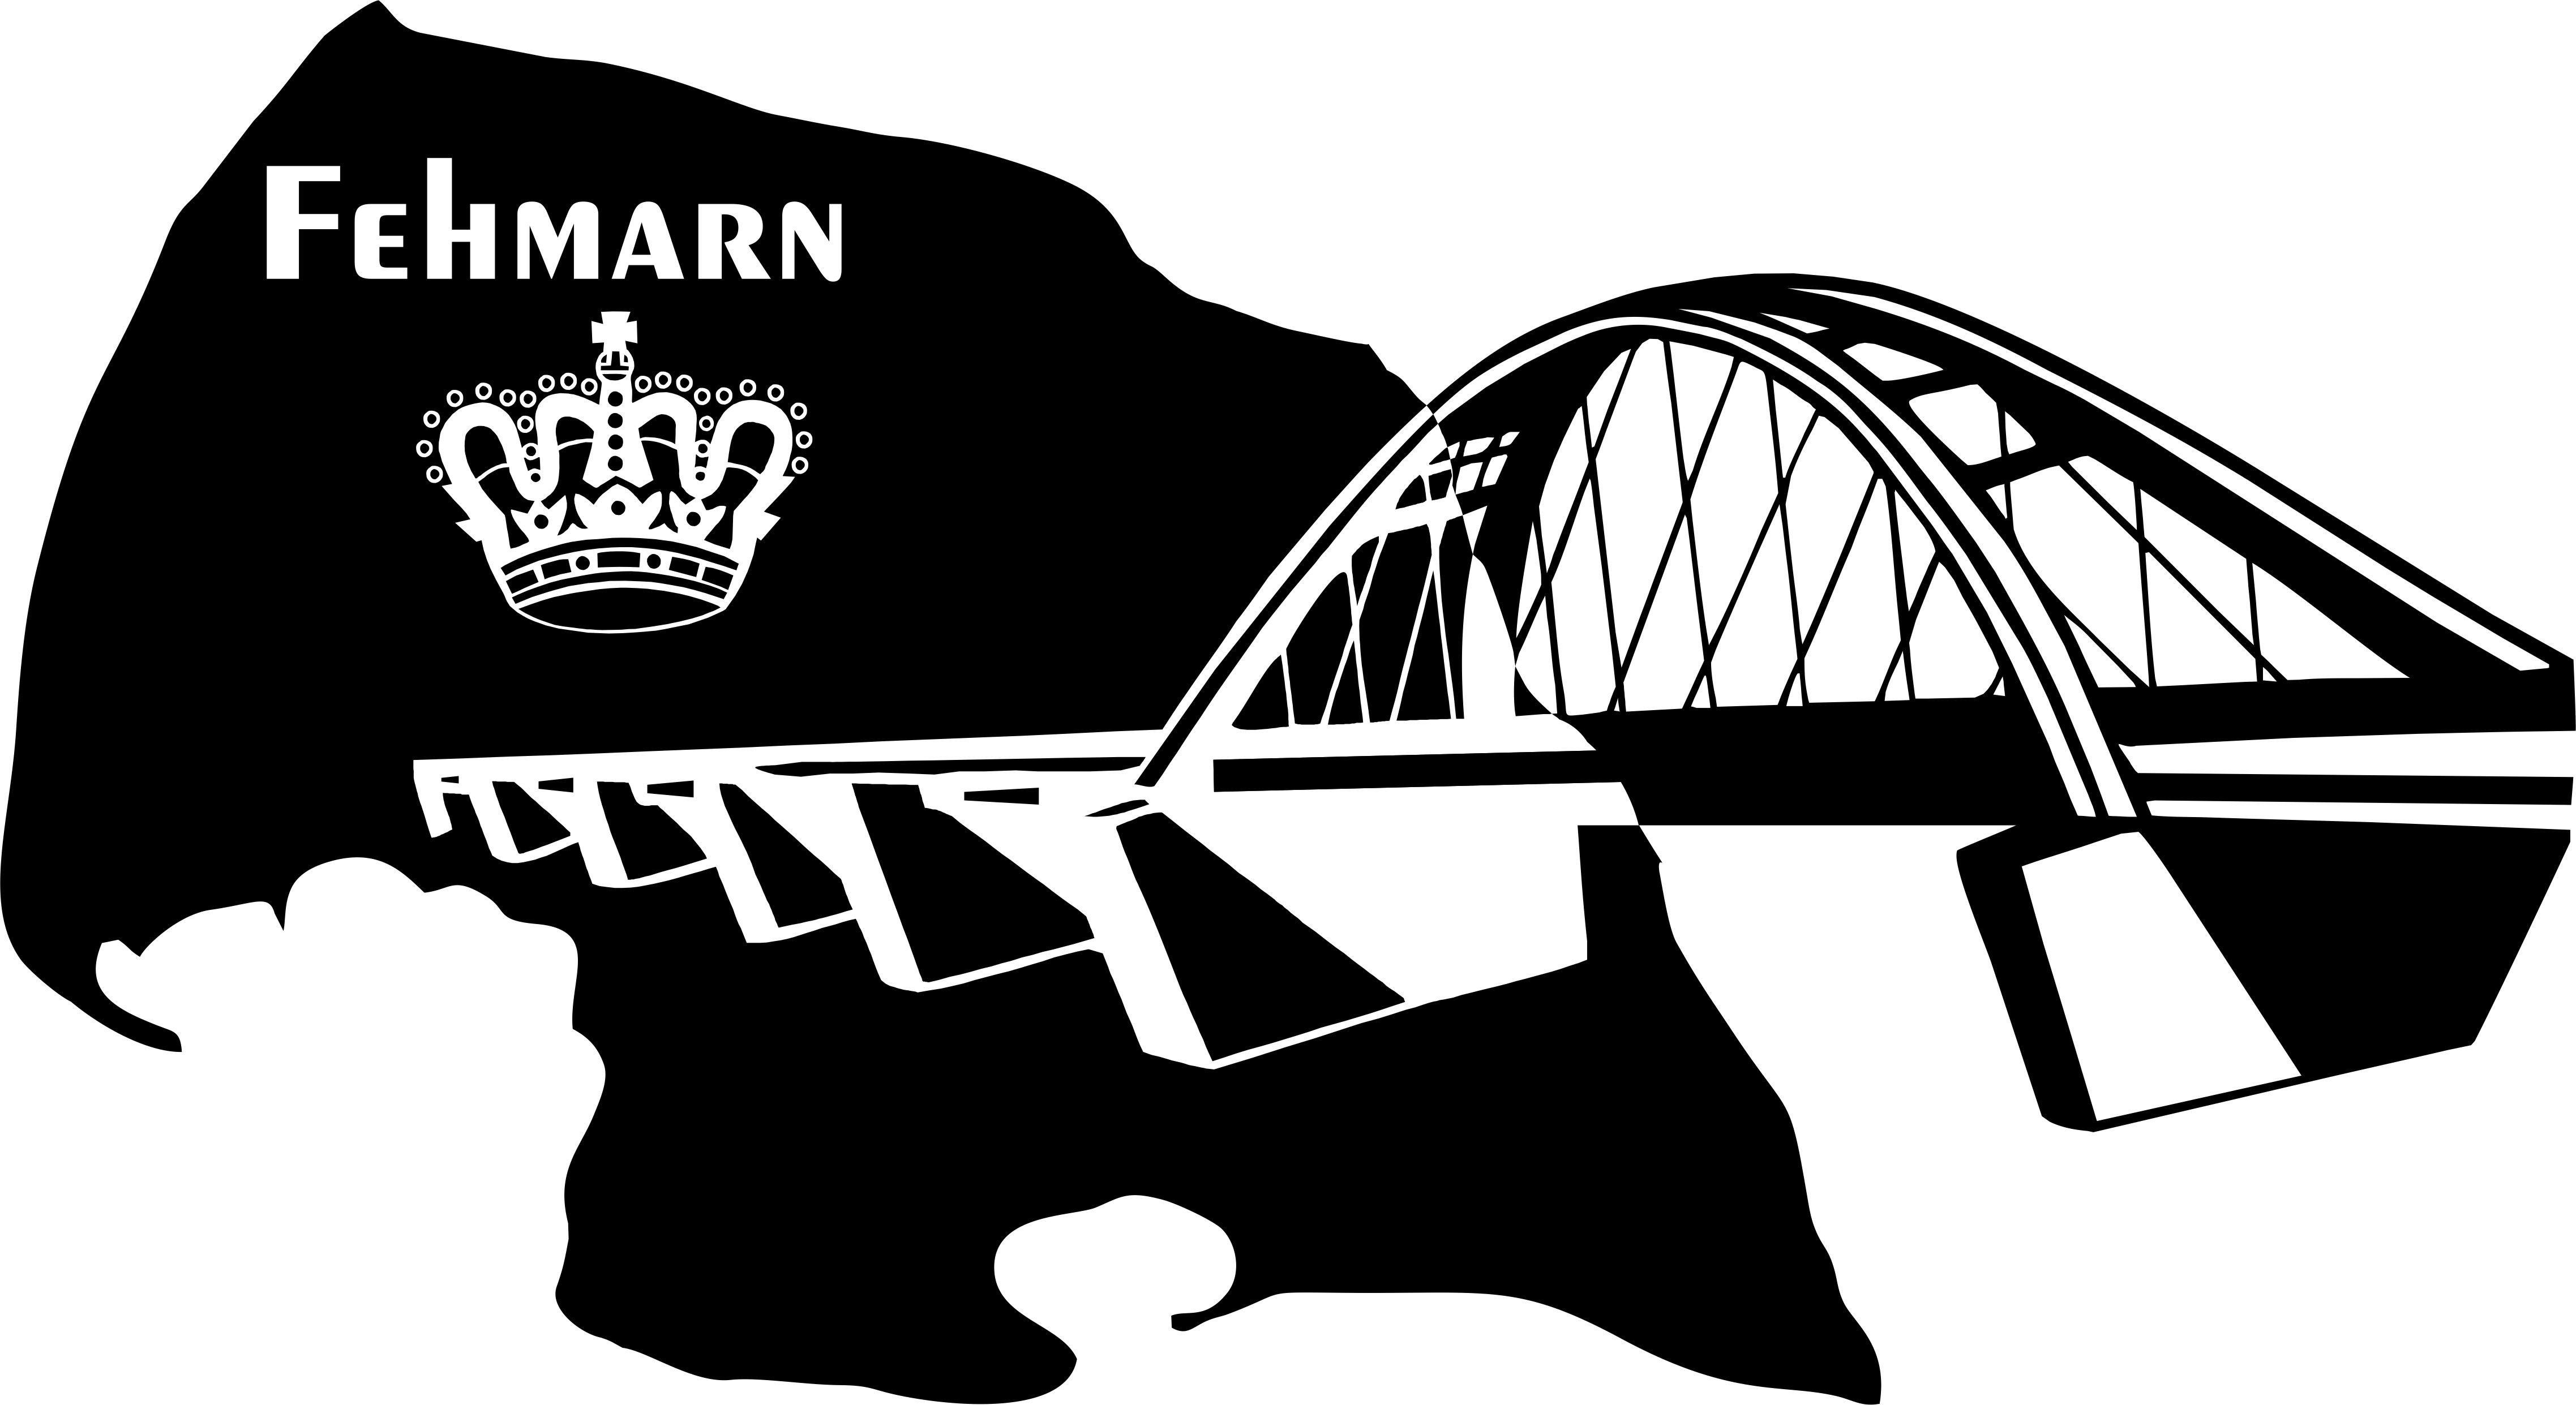 St), Wandtattoo Selbstklebend Hintergrundfolie Fehmarn Aufkleber Fehmarnsundbrücke Wandtattoodesign (1 ohne Krone